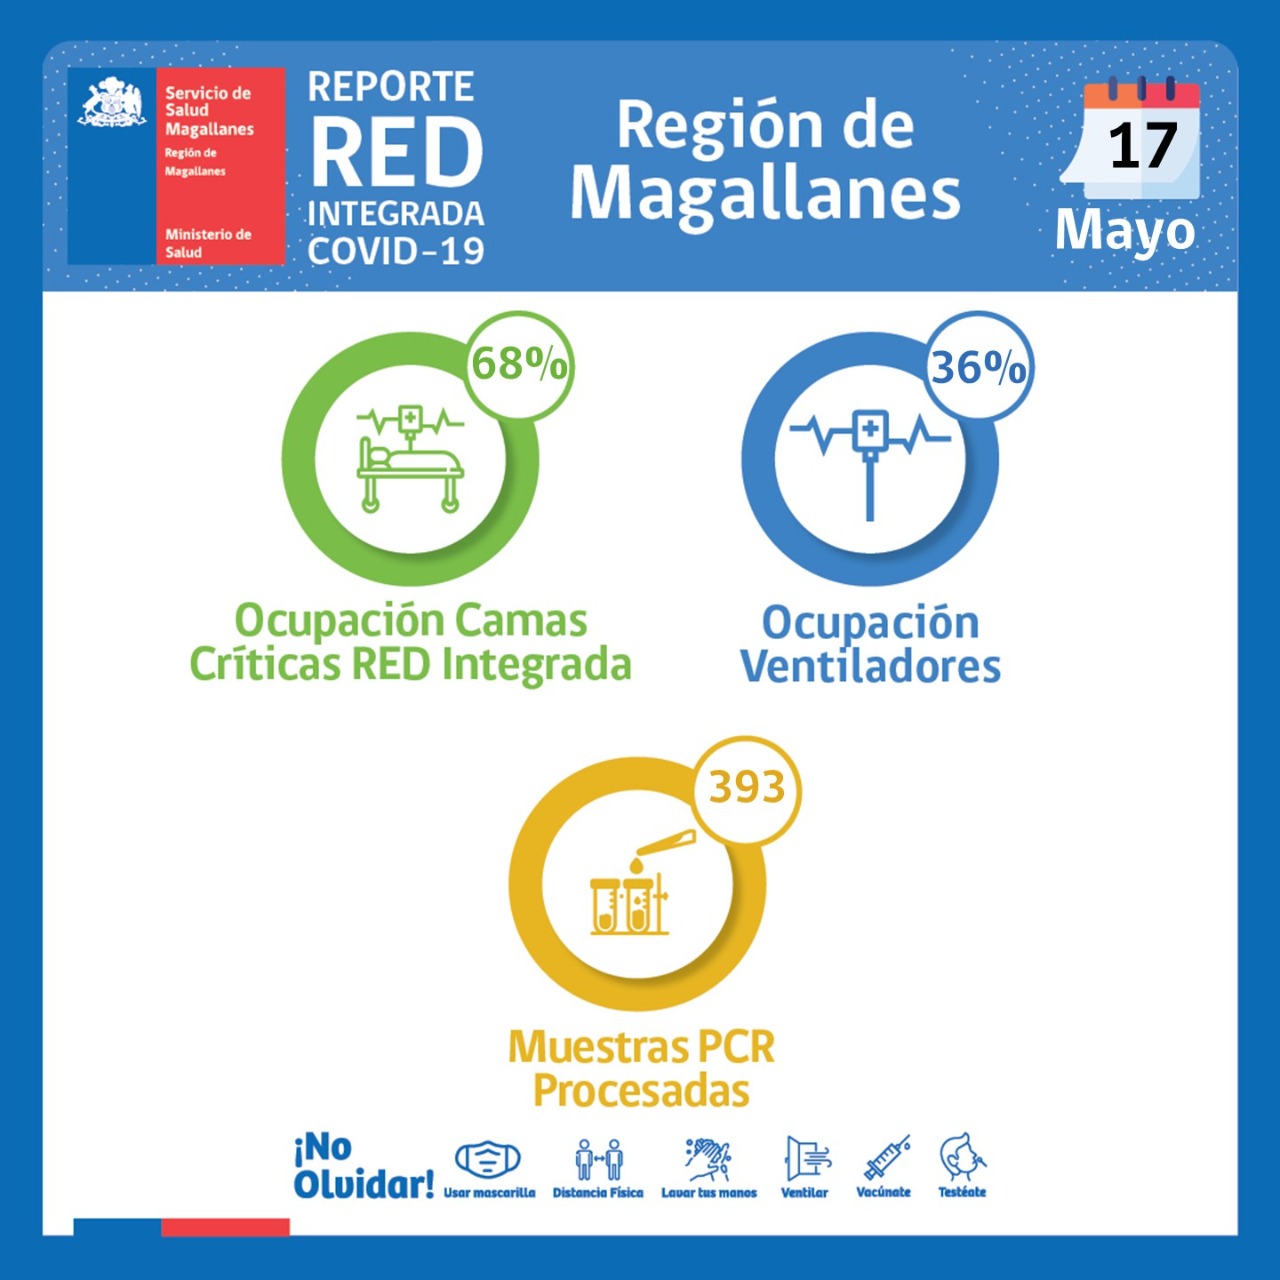 Estado de la red integrada covid19 en Magallanes | Martes 17 de mayo